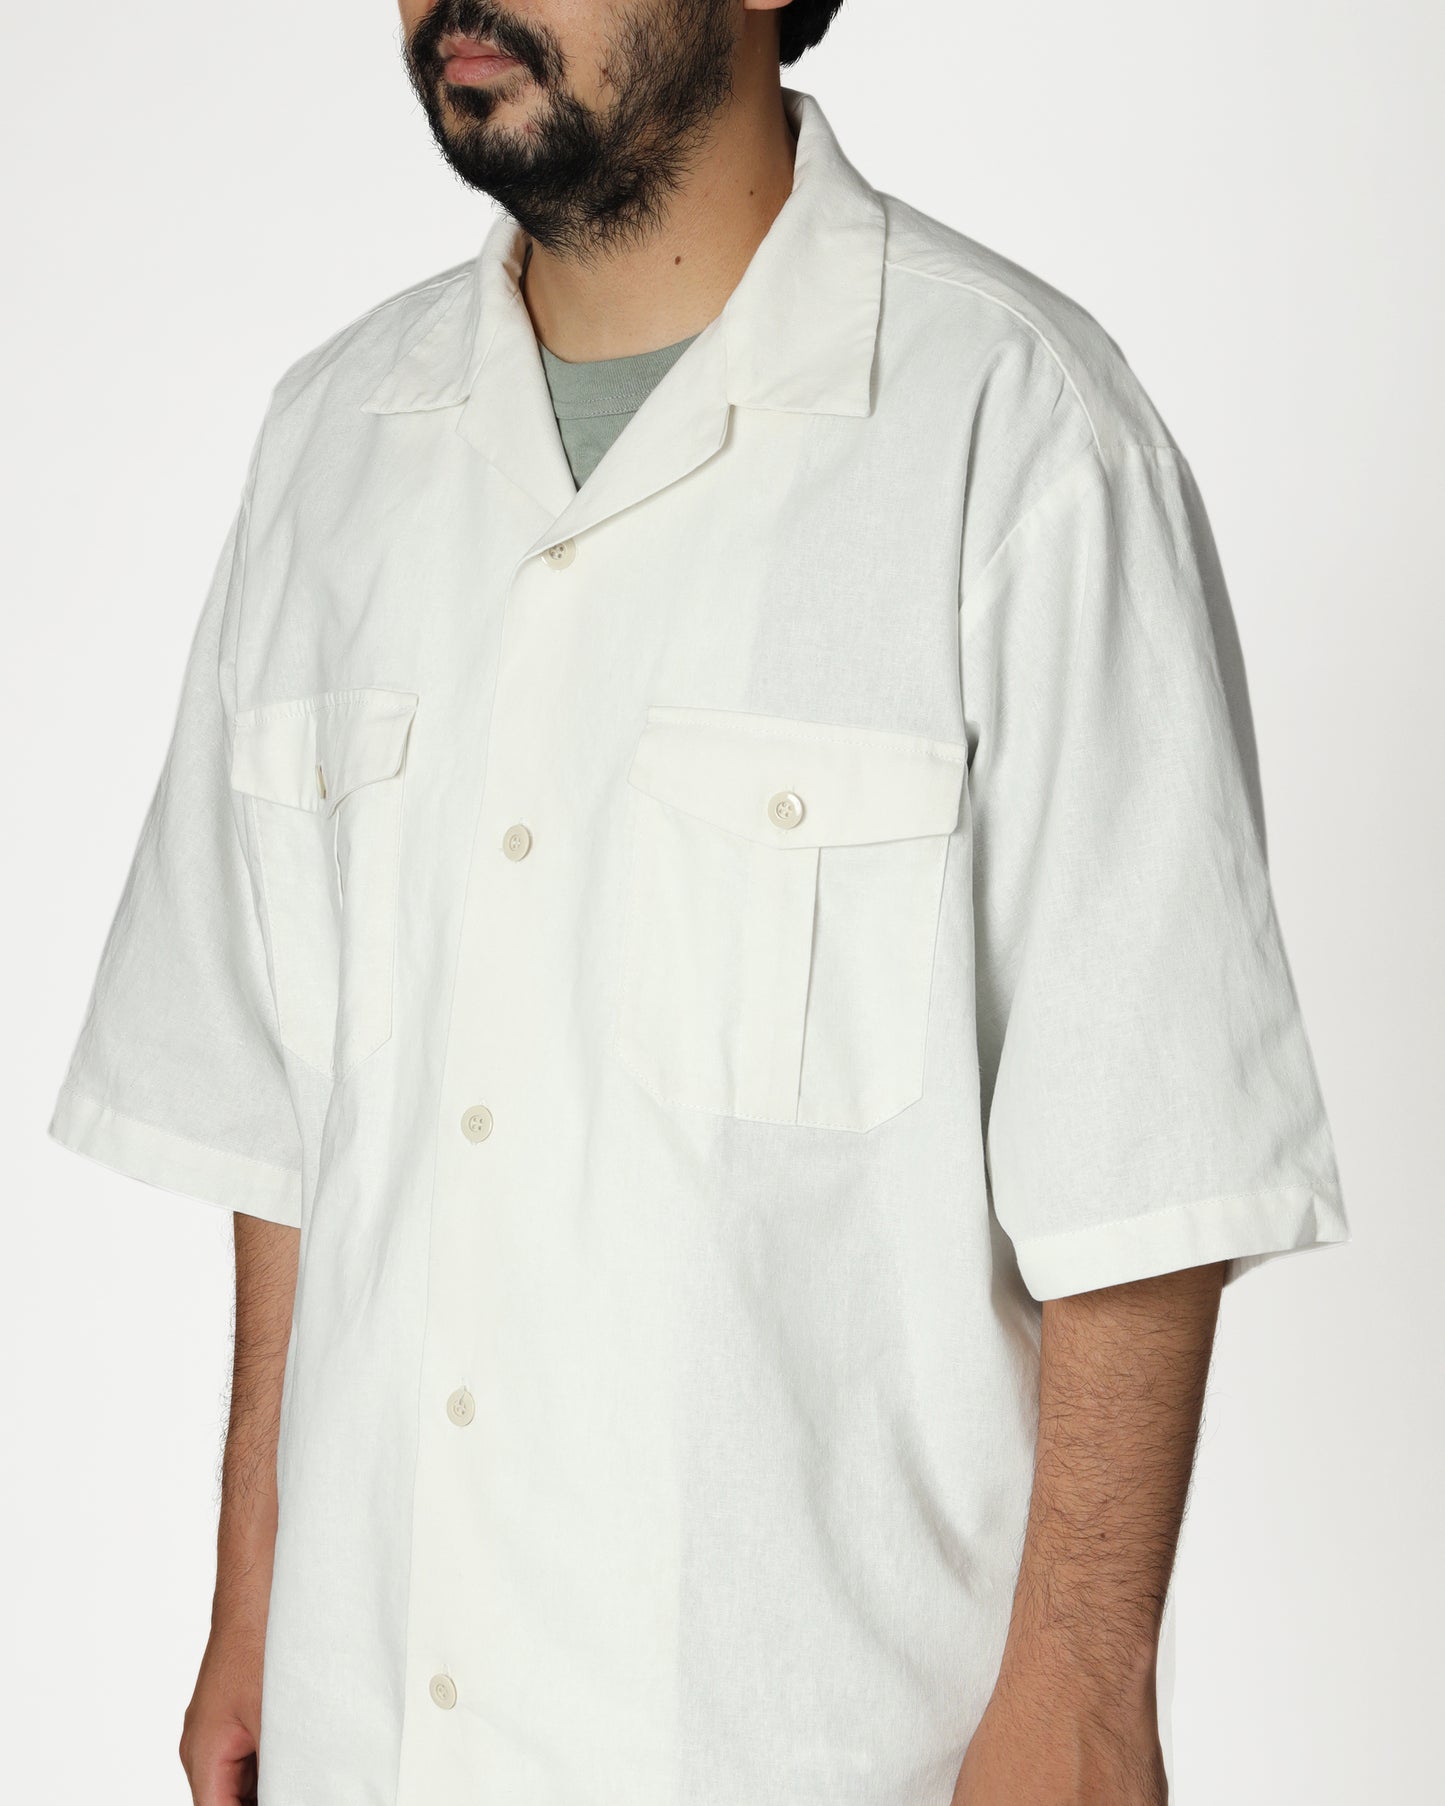 Cotton/Linen Slab H/S Utility Shirt